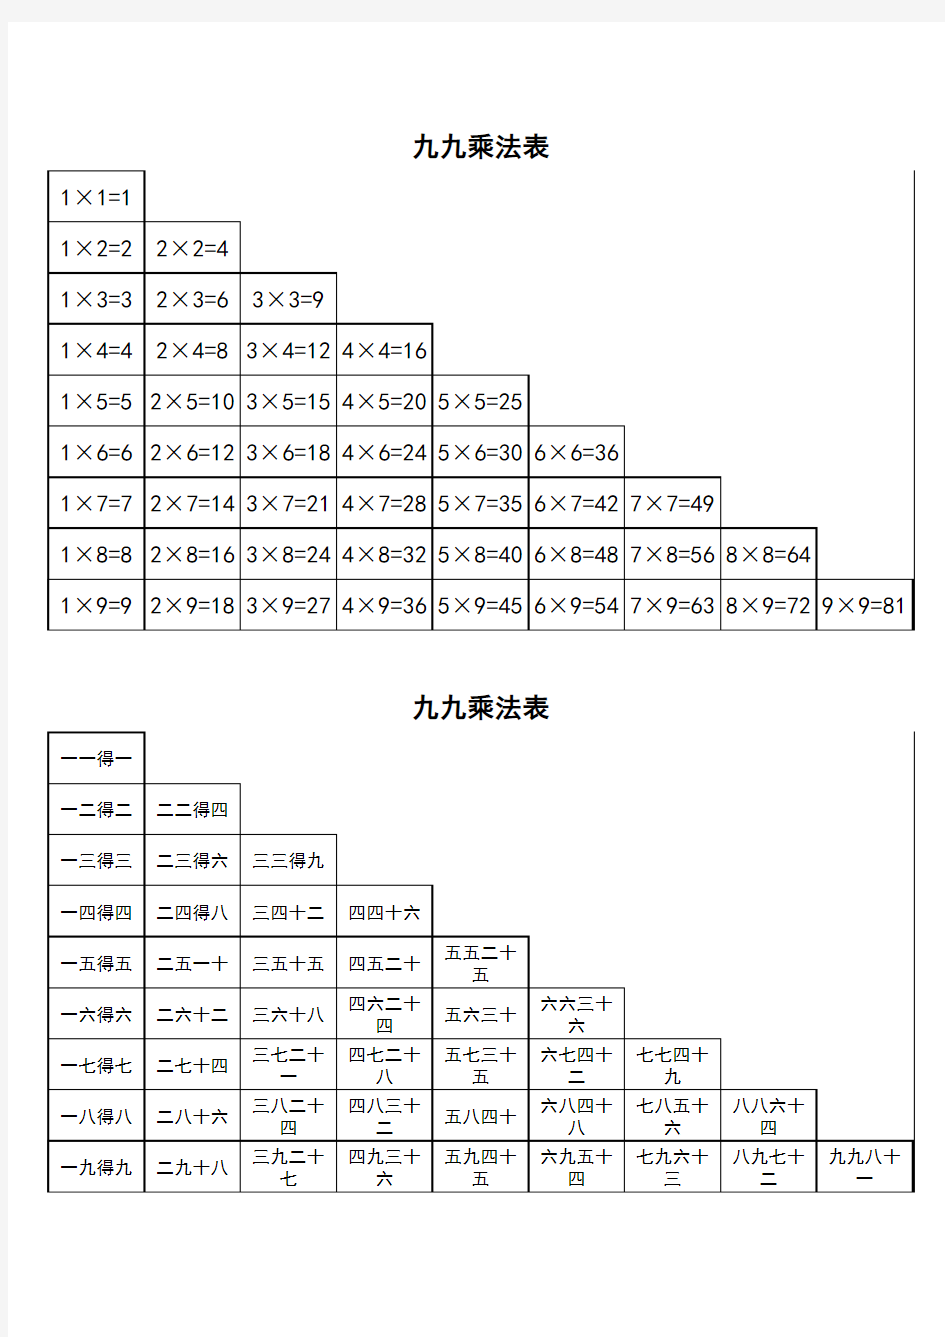 九九乘法表-中文版